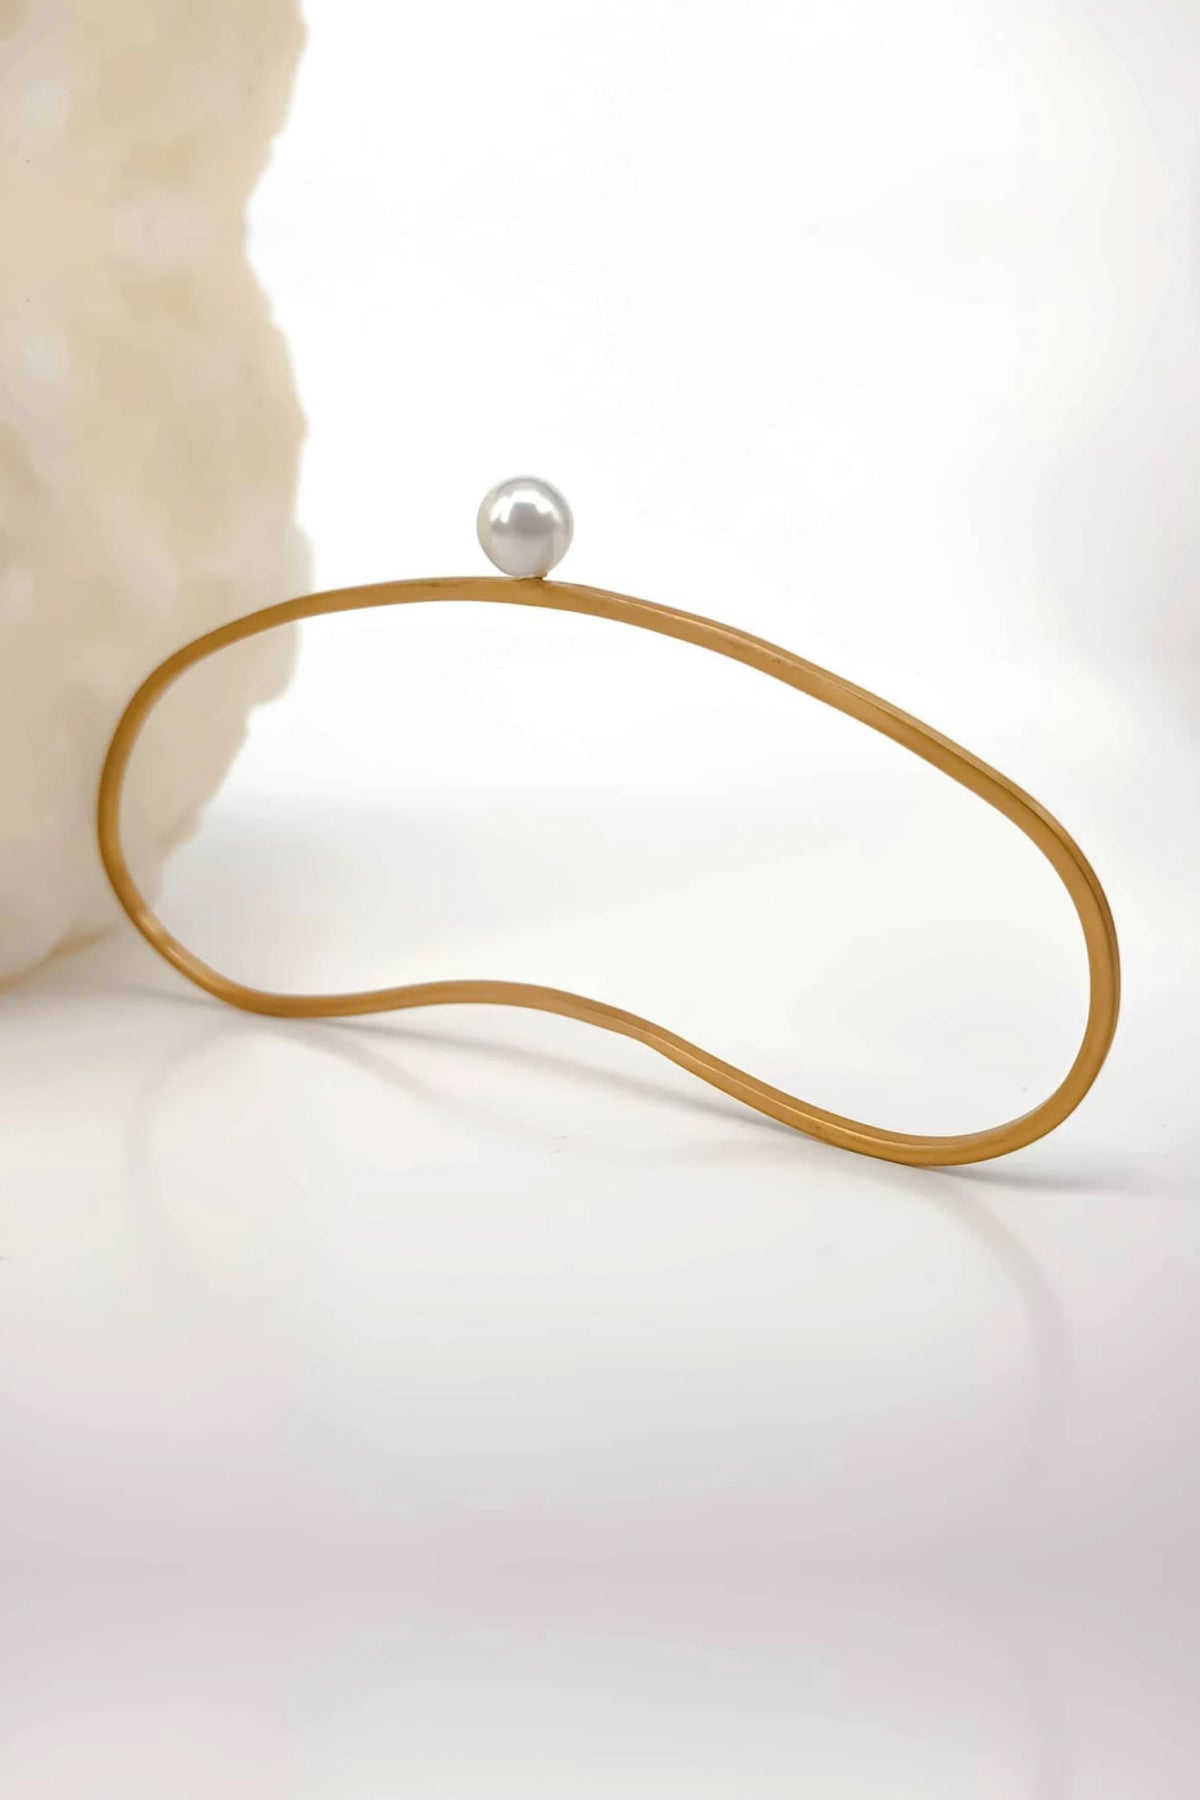 Pearl 18K Gold Filled Handlet - Bracelet